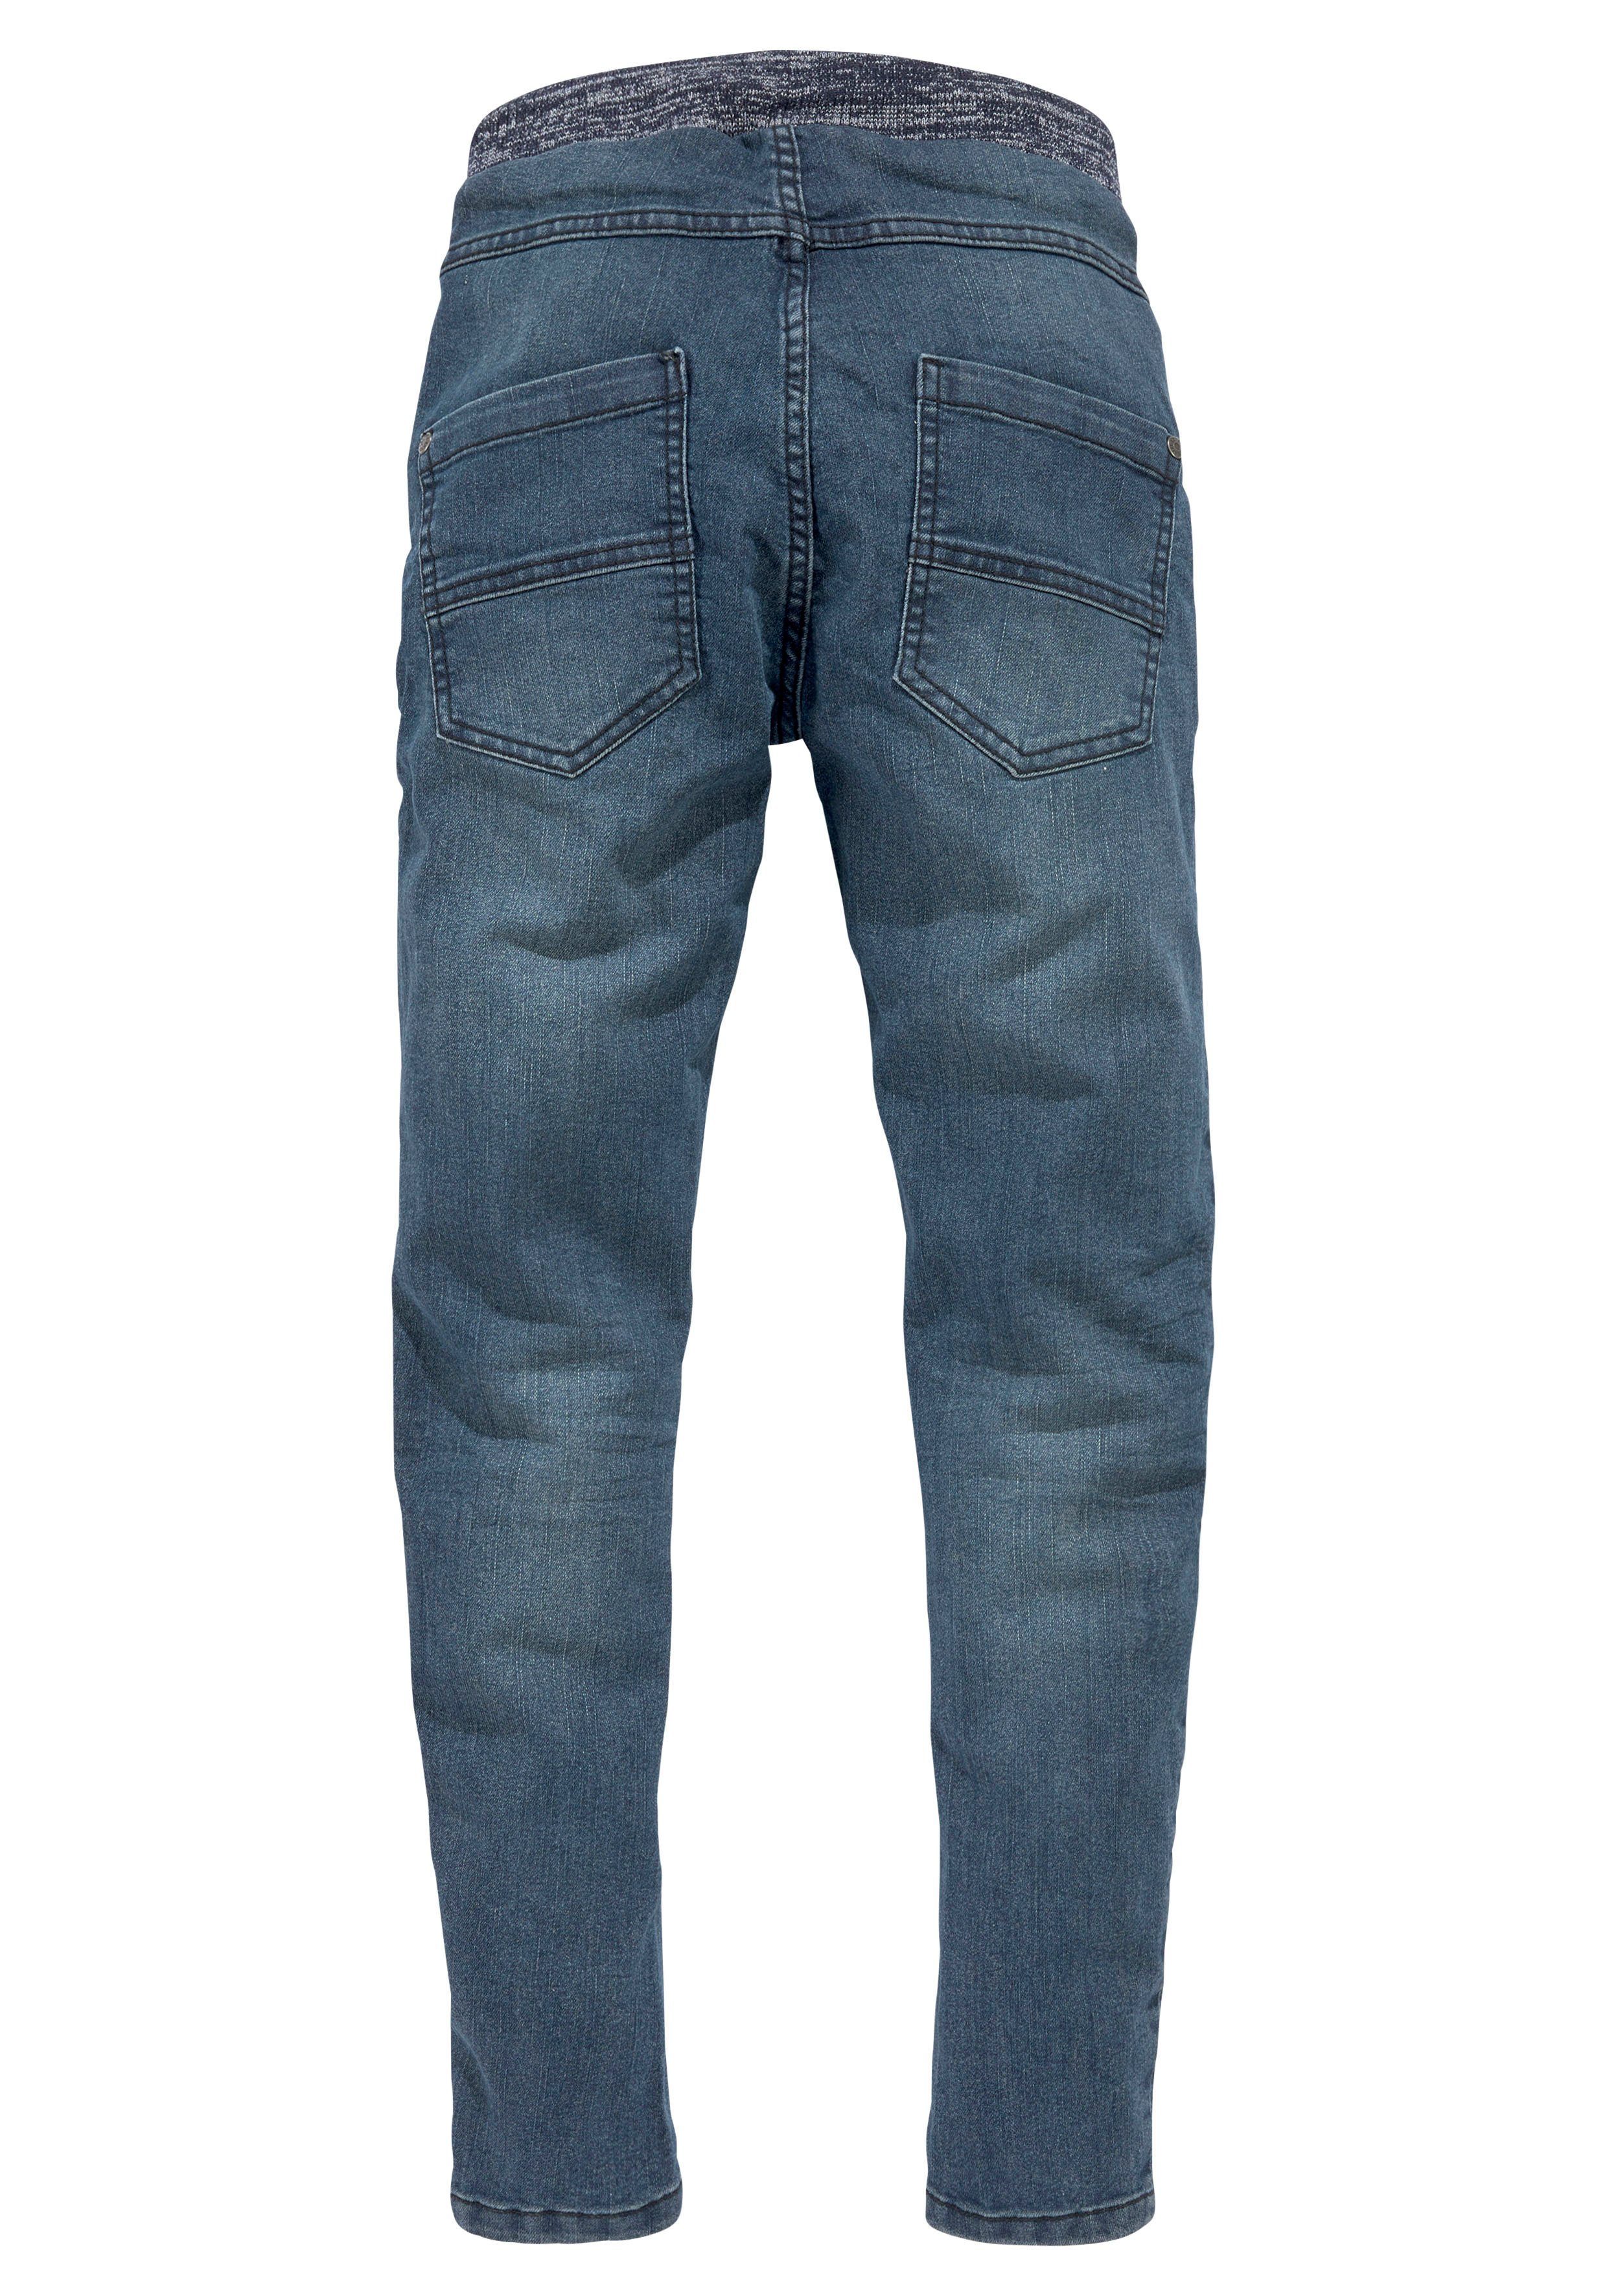 Arizona Stretch-Jeans mit schmalem Beinverlauf tollem mit Rippenbund